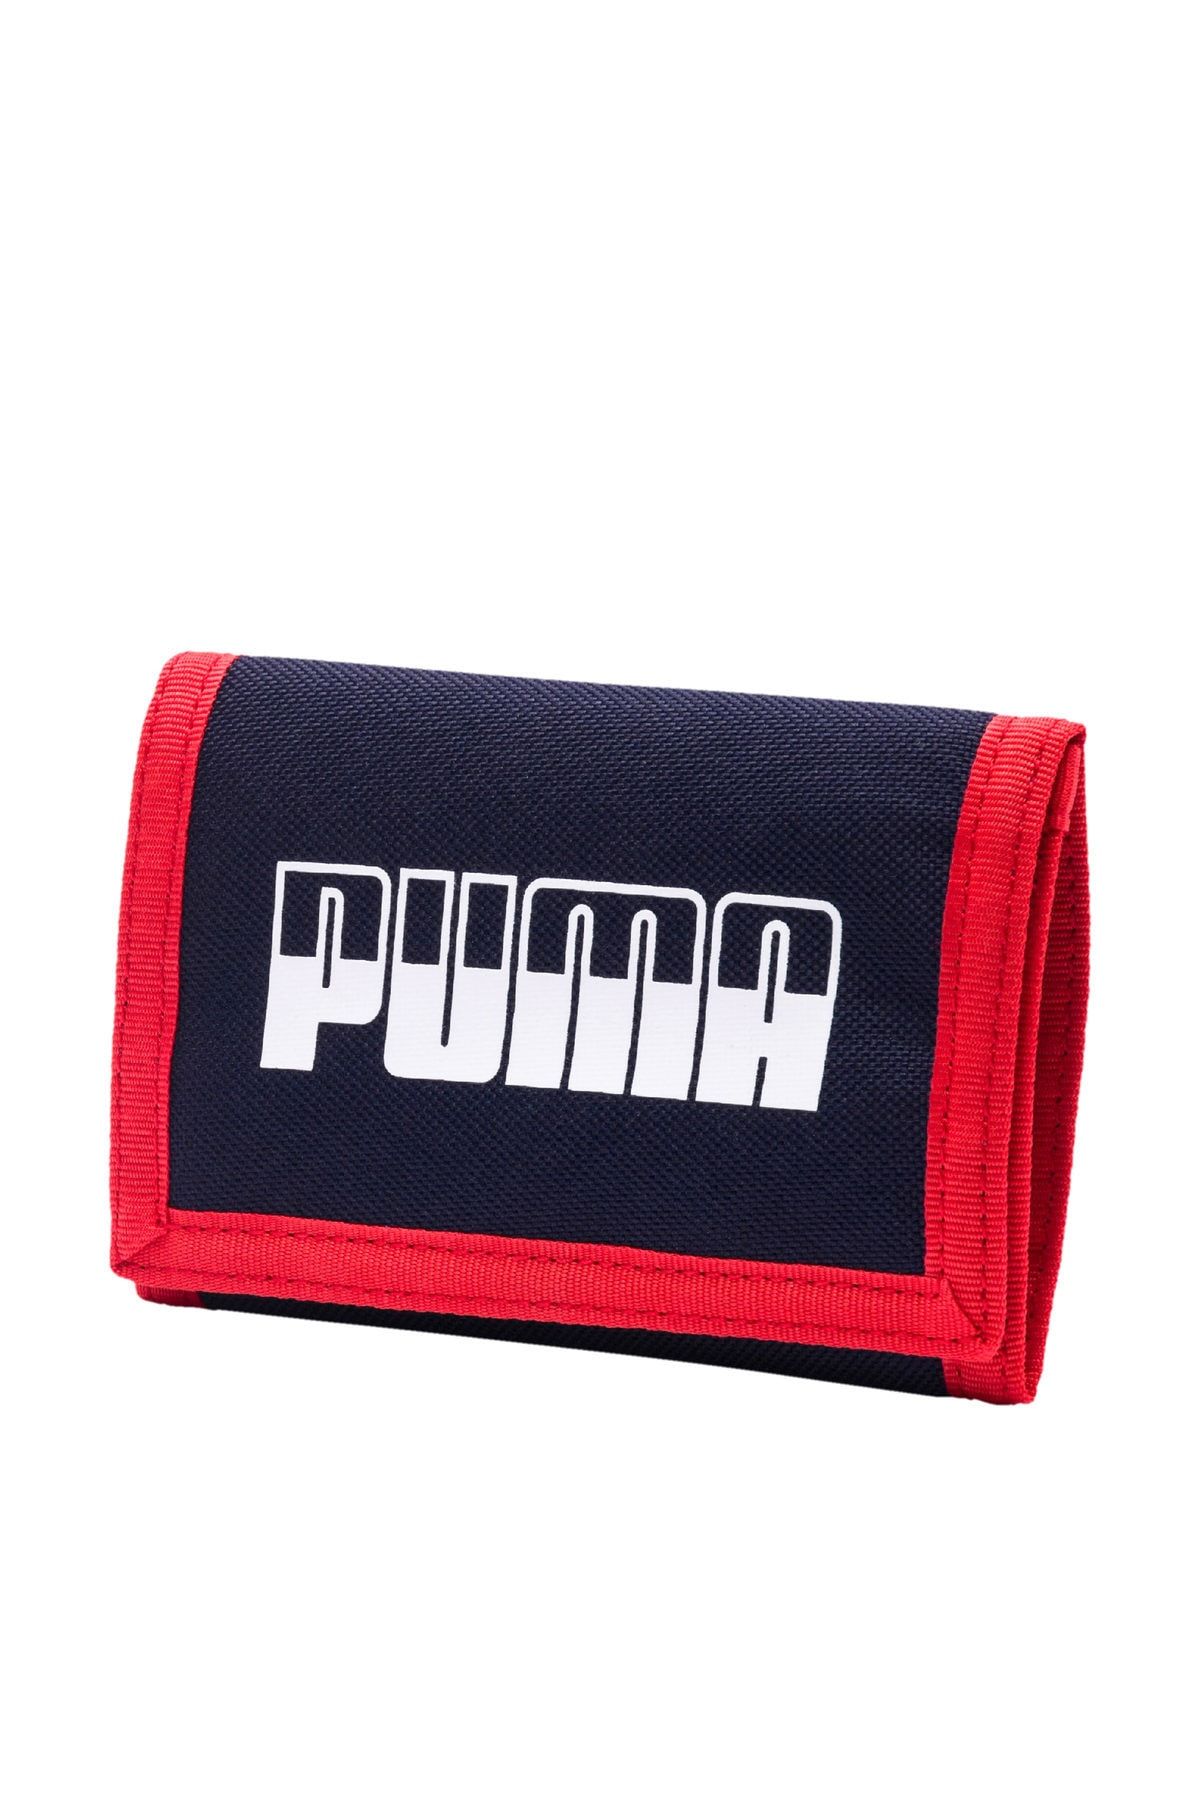 Puma Unisex Cüzdan - 5356804 Plus Wallet İi - 5356804